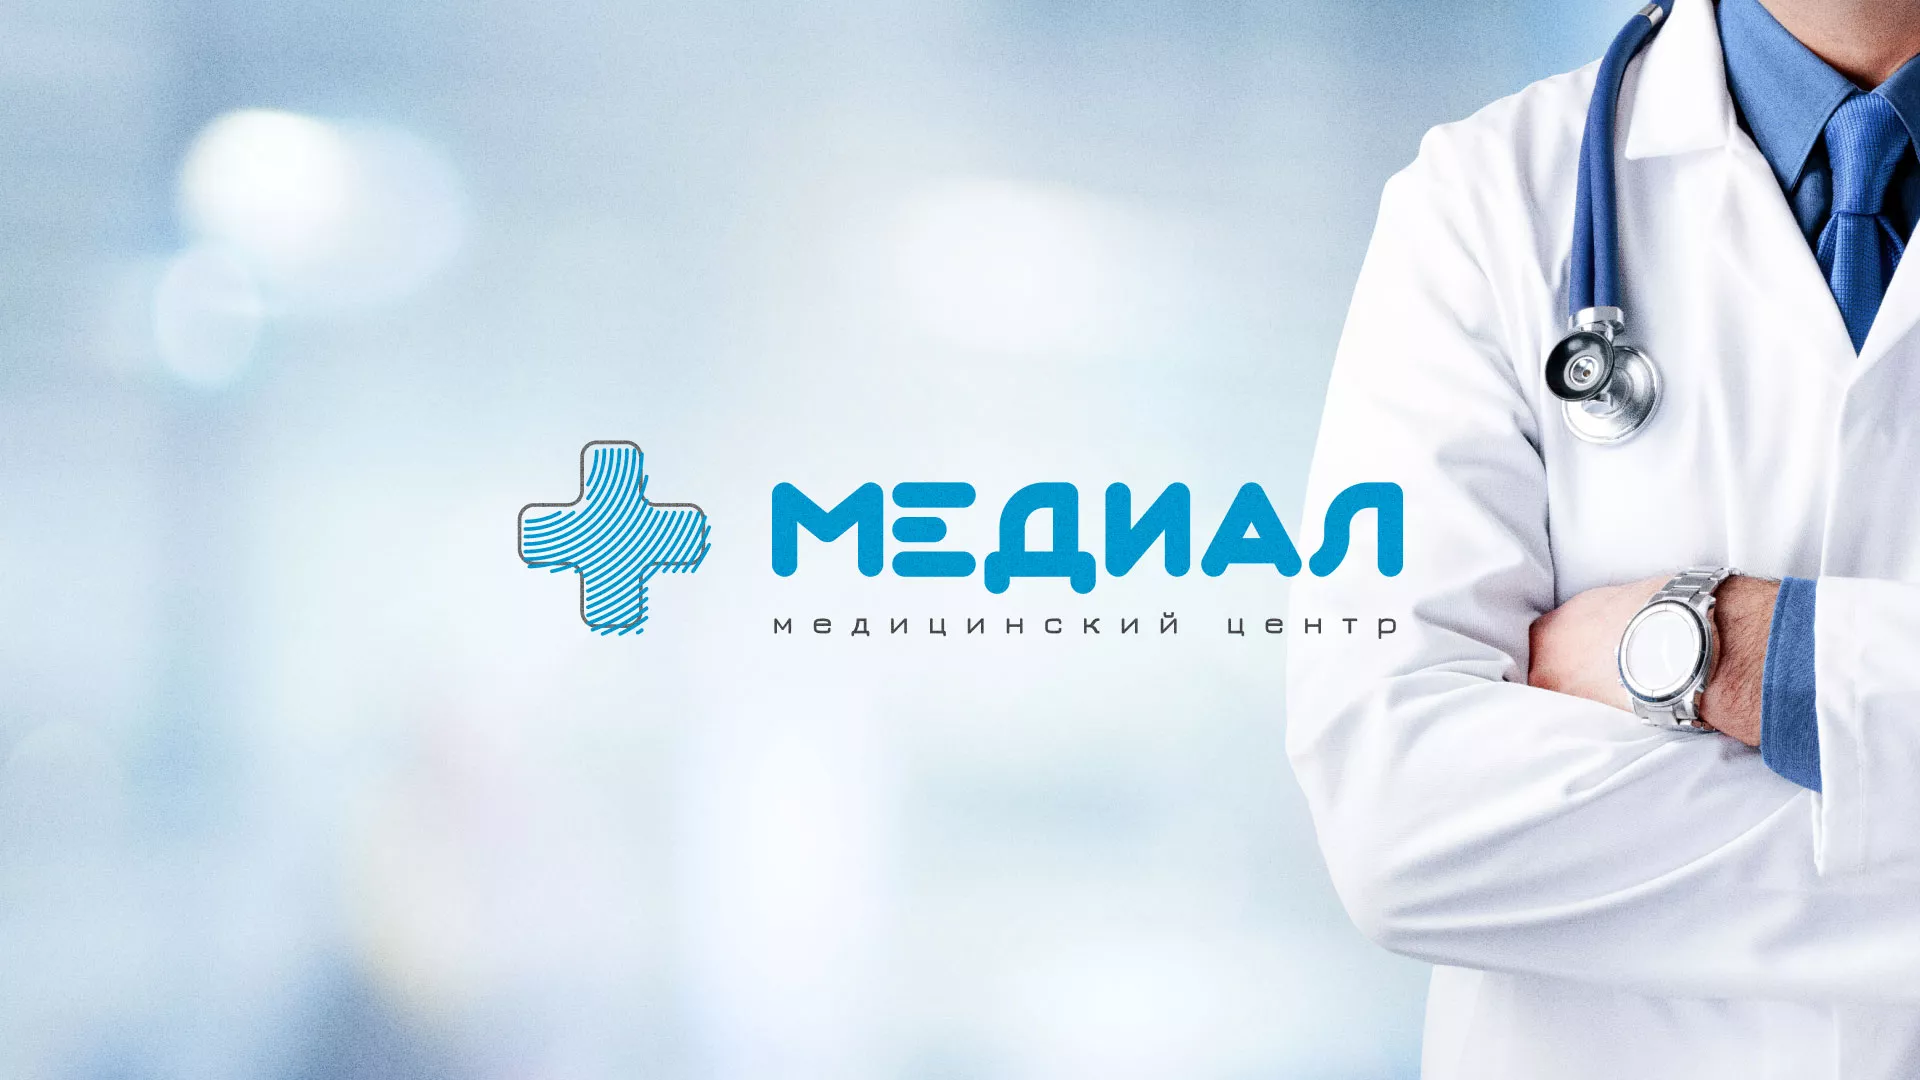 Создание сайта для медицинского центра «Медиал» в Орехово-Зуево